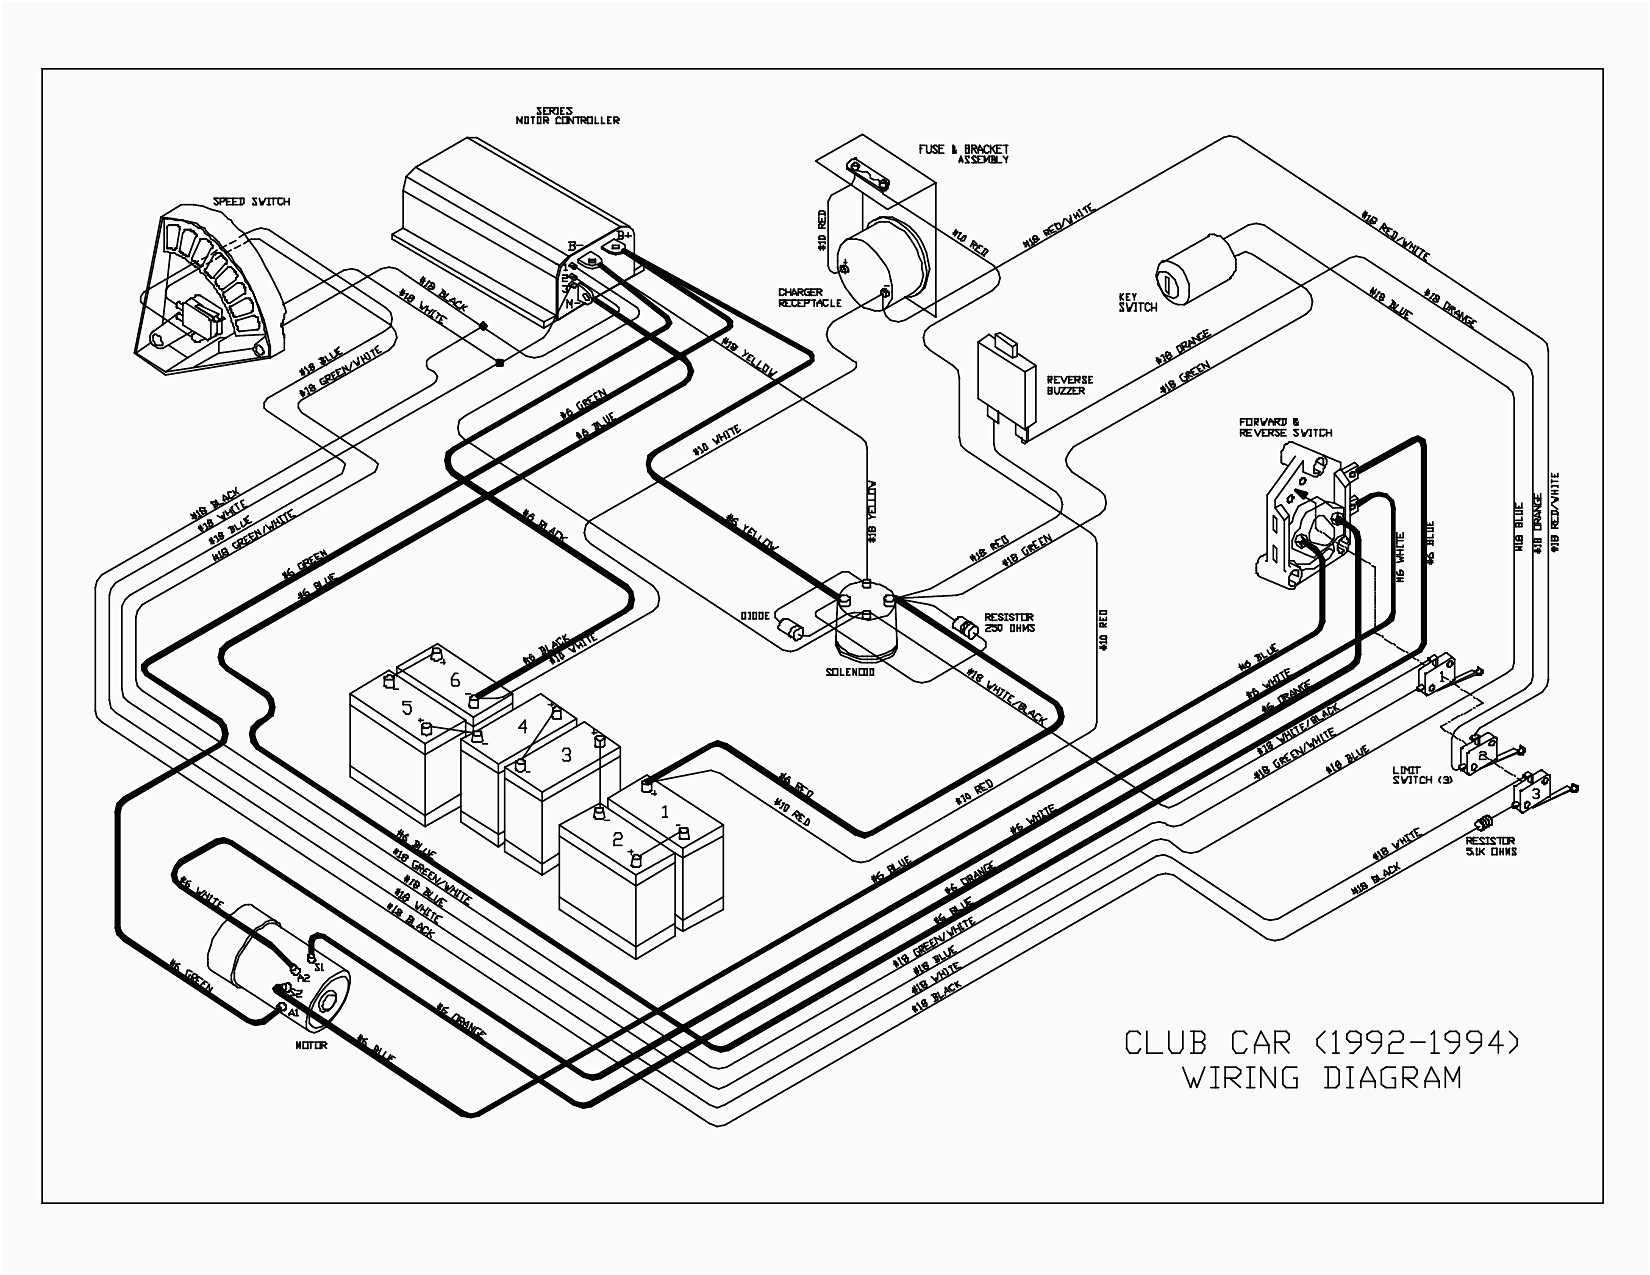 Club Car Wiring Diagram Fresh Ingersoll Rand Club Car Wiring Diagram In Luxury Parts 43 Inside